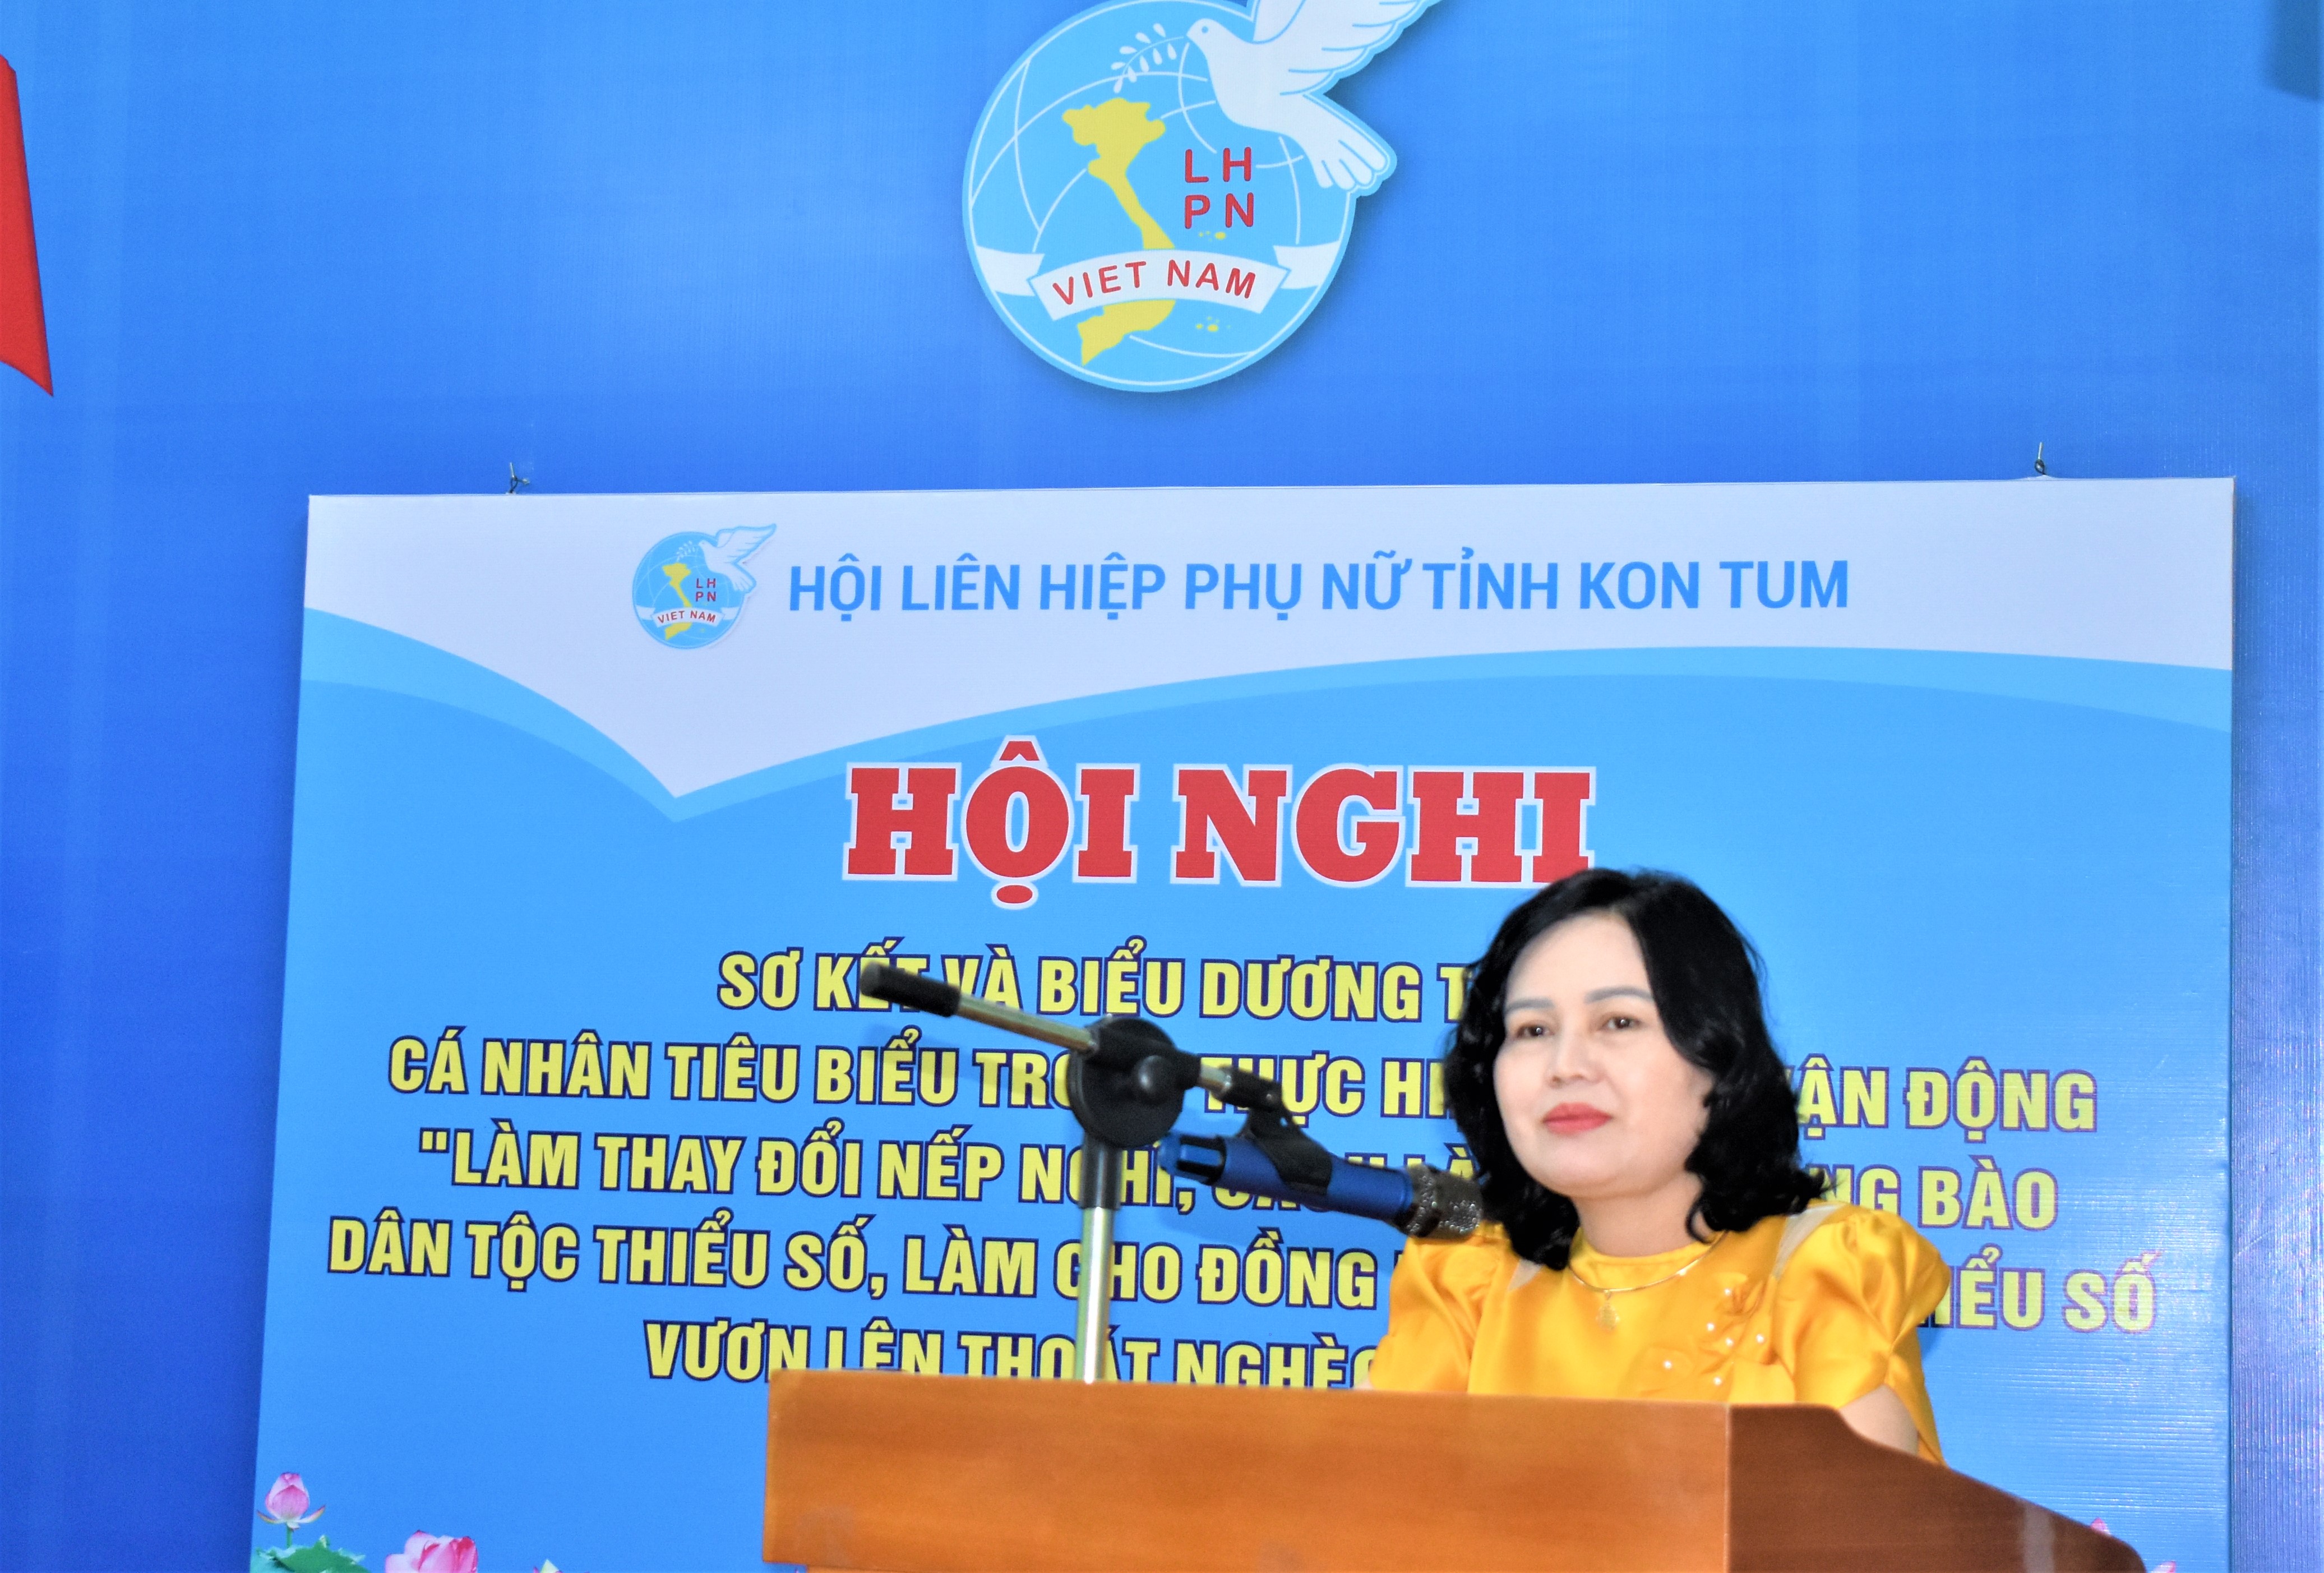 Đồng chí Y Phương, Tỉnh ủy viên, Chủ tịch Hội LHPN tỉnh khai mạc Hội nghị